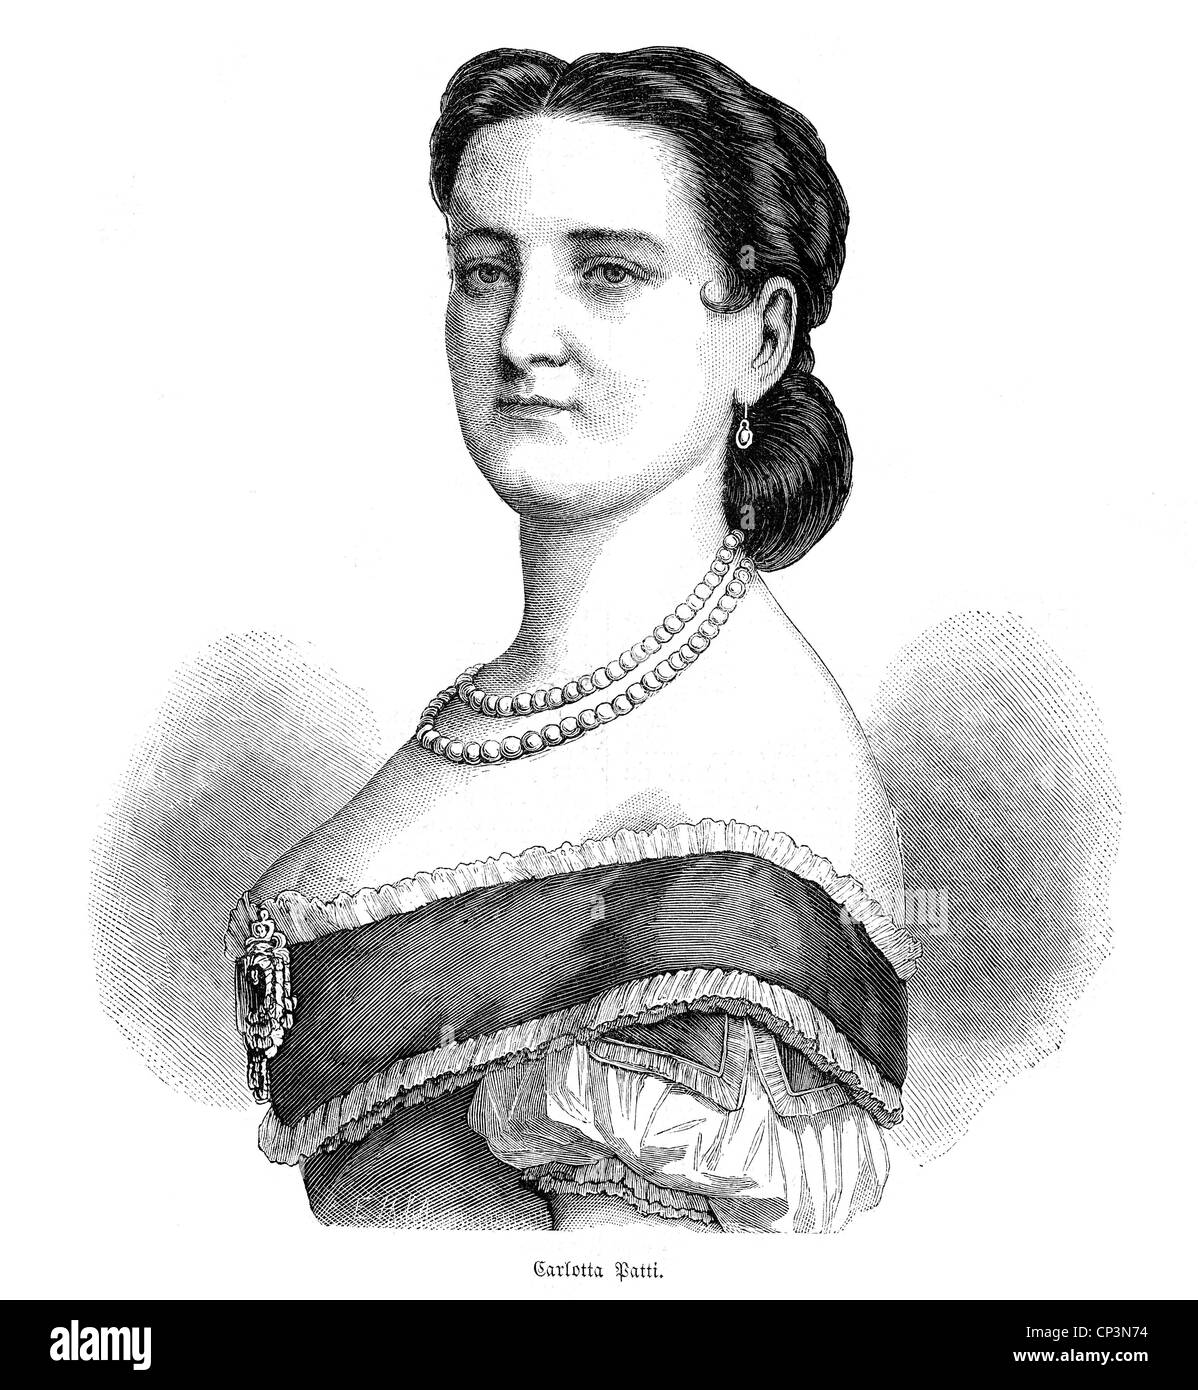 Patti, Carlotta, 1840 - 27.6.1889, cantante d'opera italiana, ritratto, incisione in legno, 1860s, Foto Stock